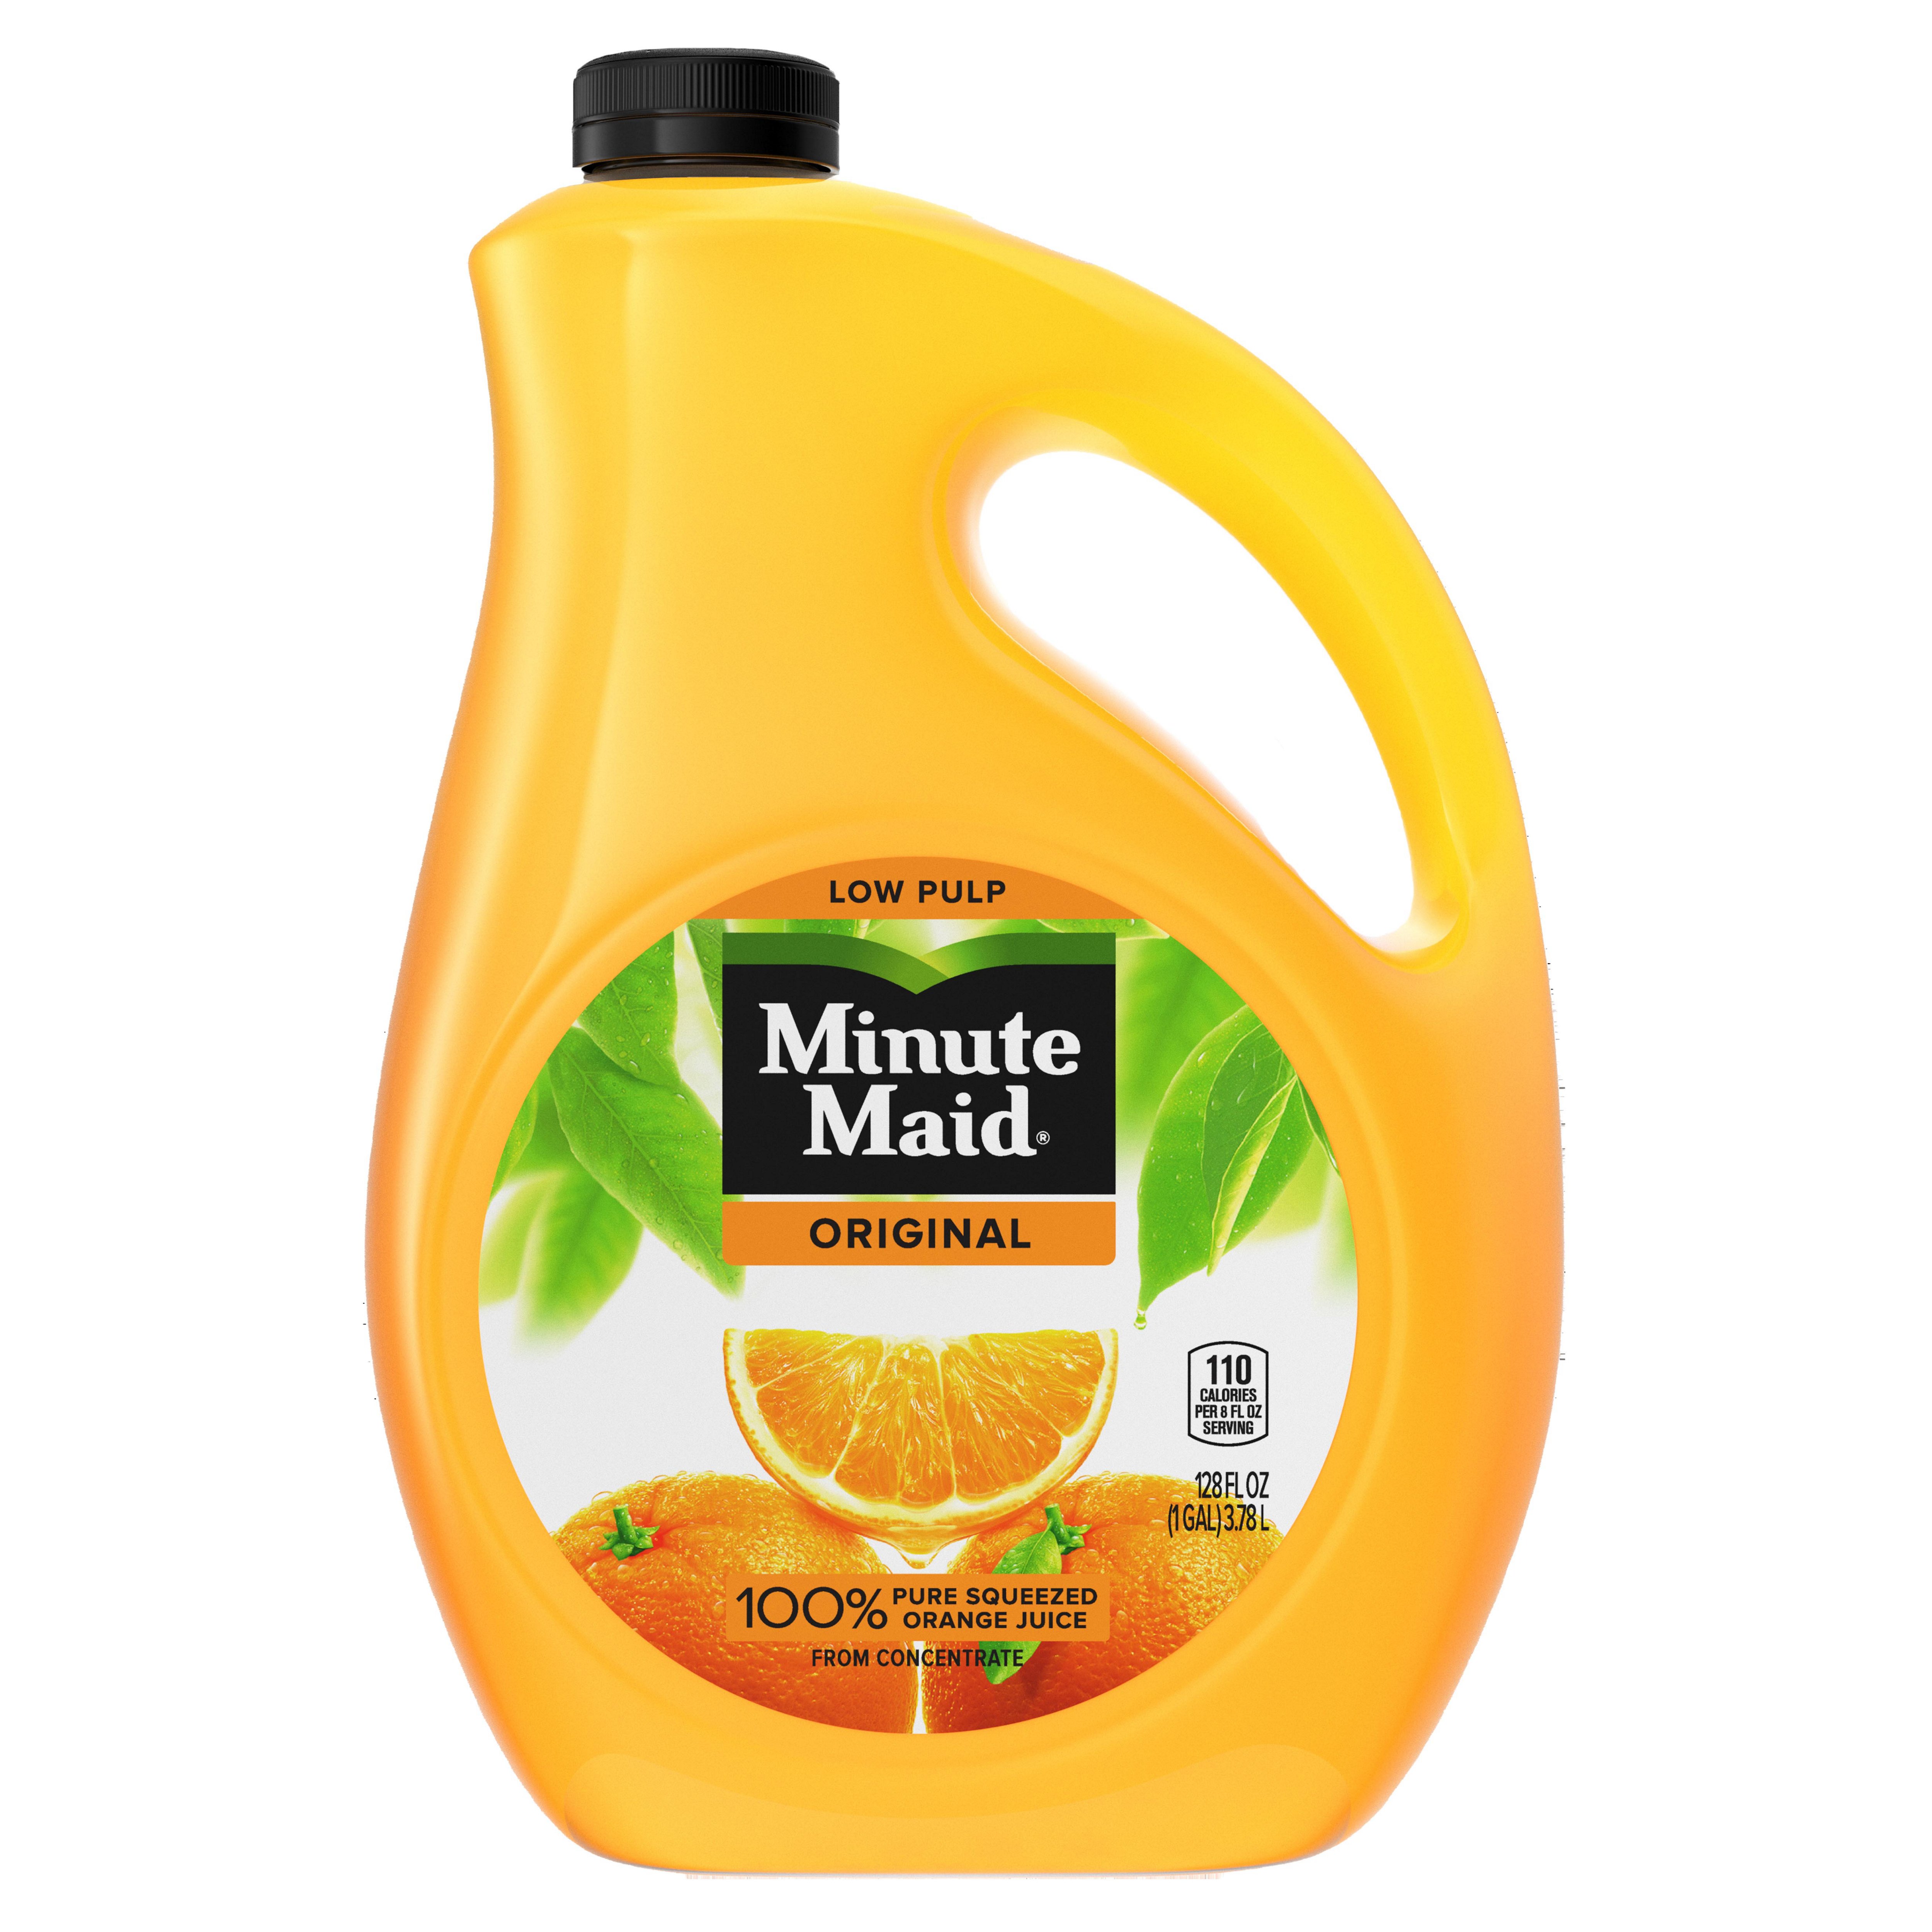 Minute Maid Premium Original Low Pulp Orange Juice Shop Juice At